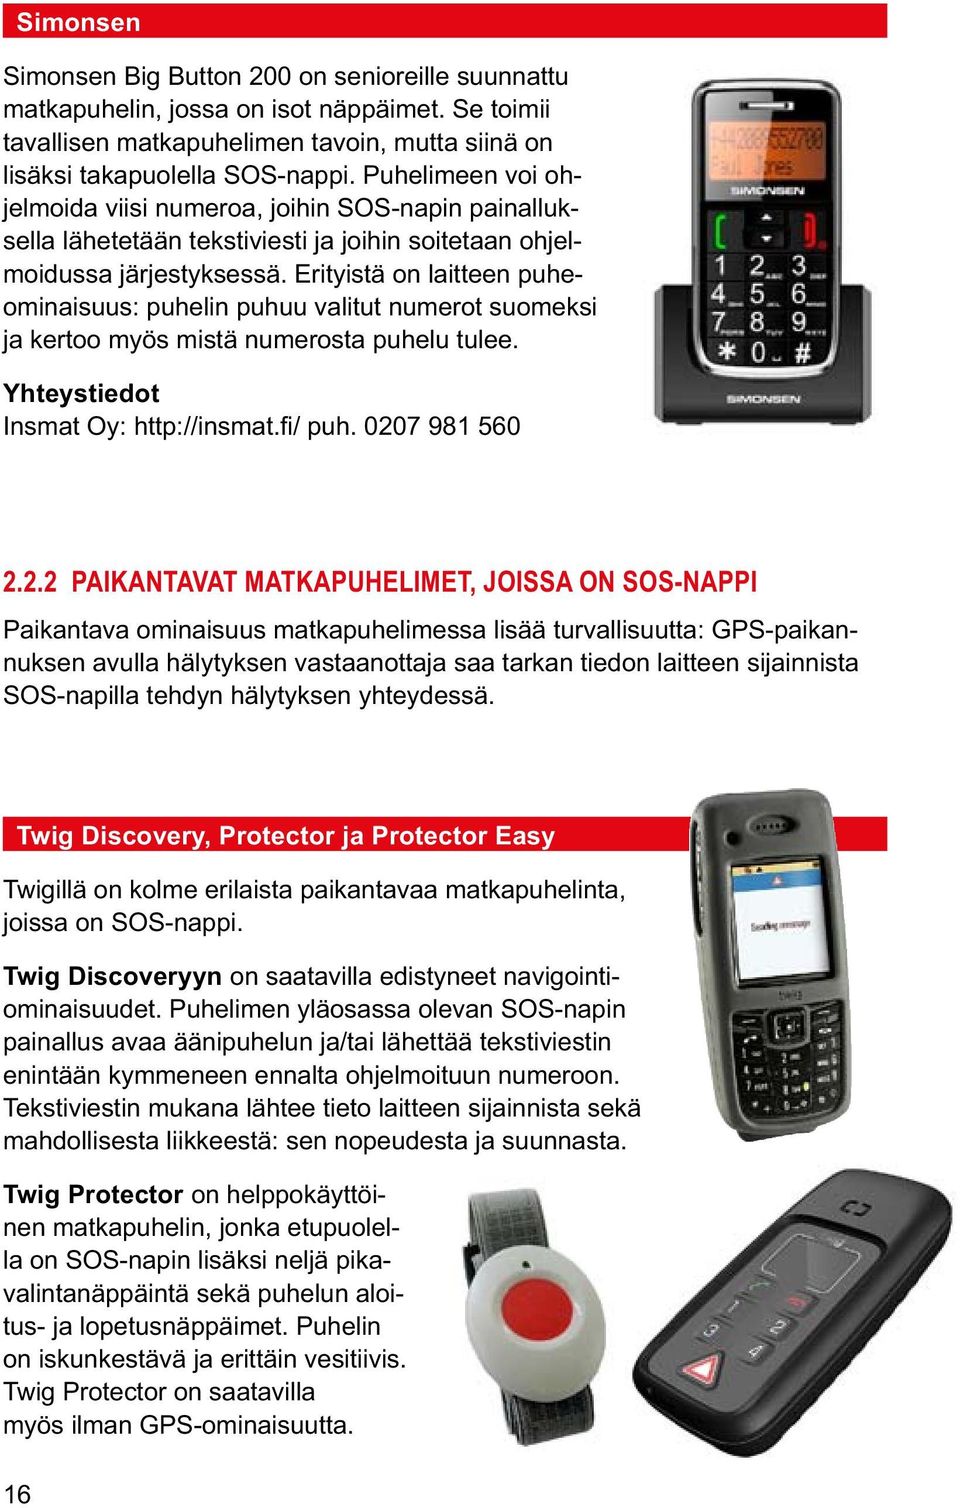 Erityistä on laitteen puheominaisuus: puhelin puhuu valitut numerot suomeksi ja kertoo myös mistä numerosta puhelu tulee. Insmat Oy: http://insmat.fi/ puh. 020